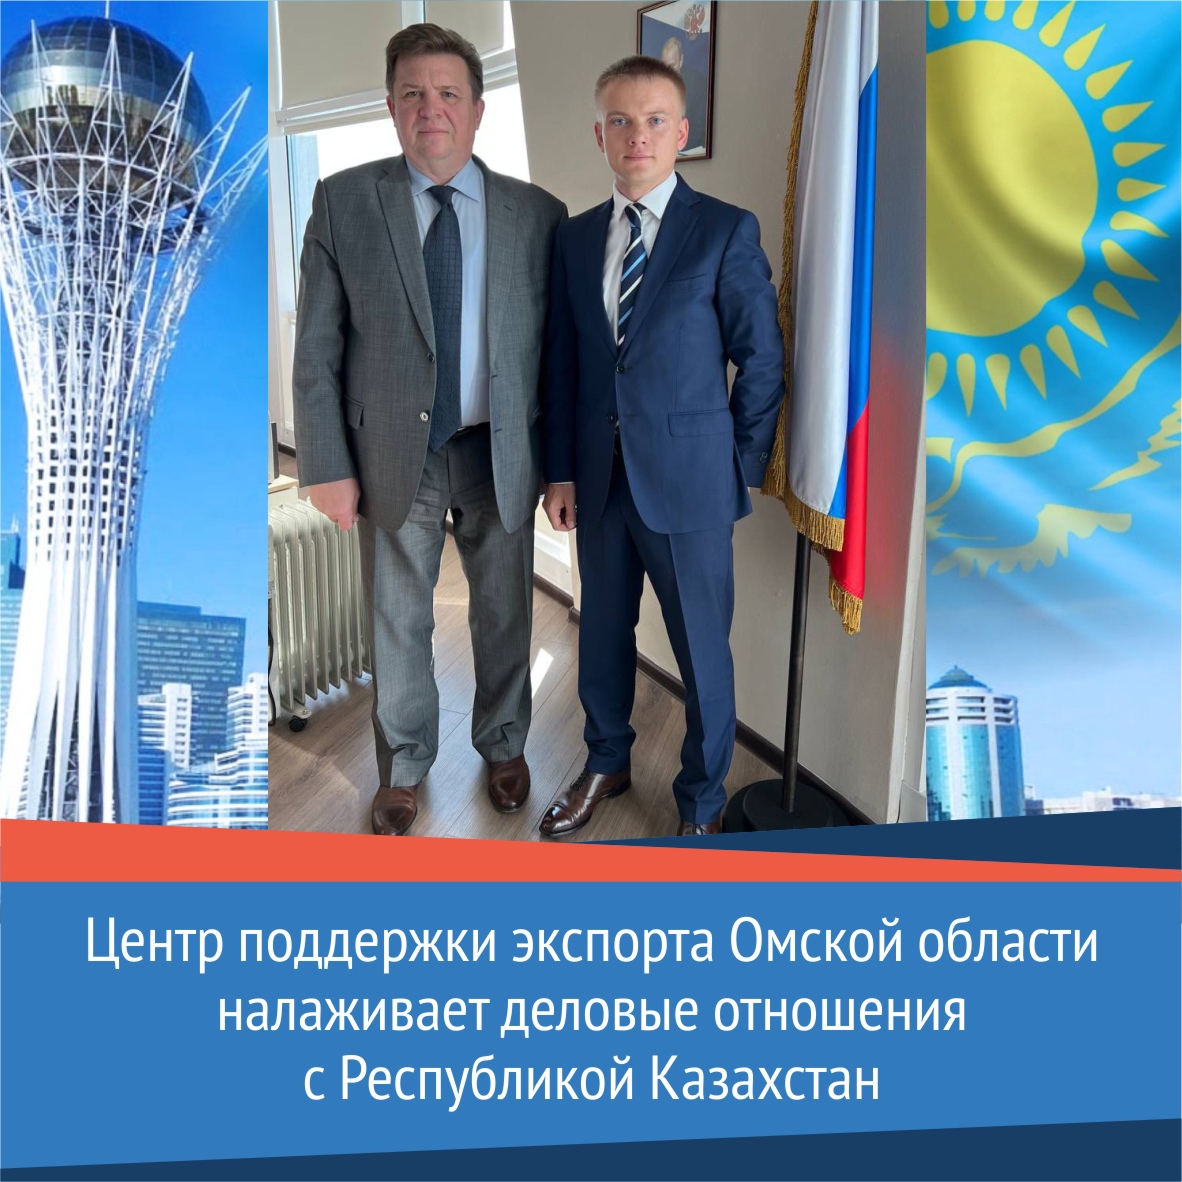 Центр поддержки экспорта договорился о бизнес-миссиях в Казахстан